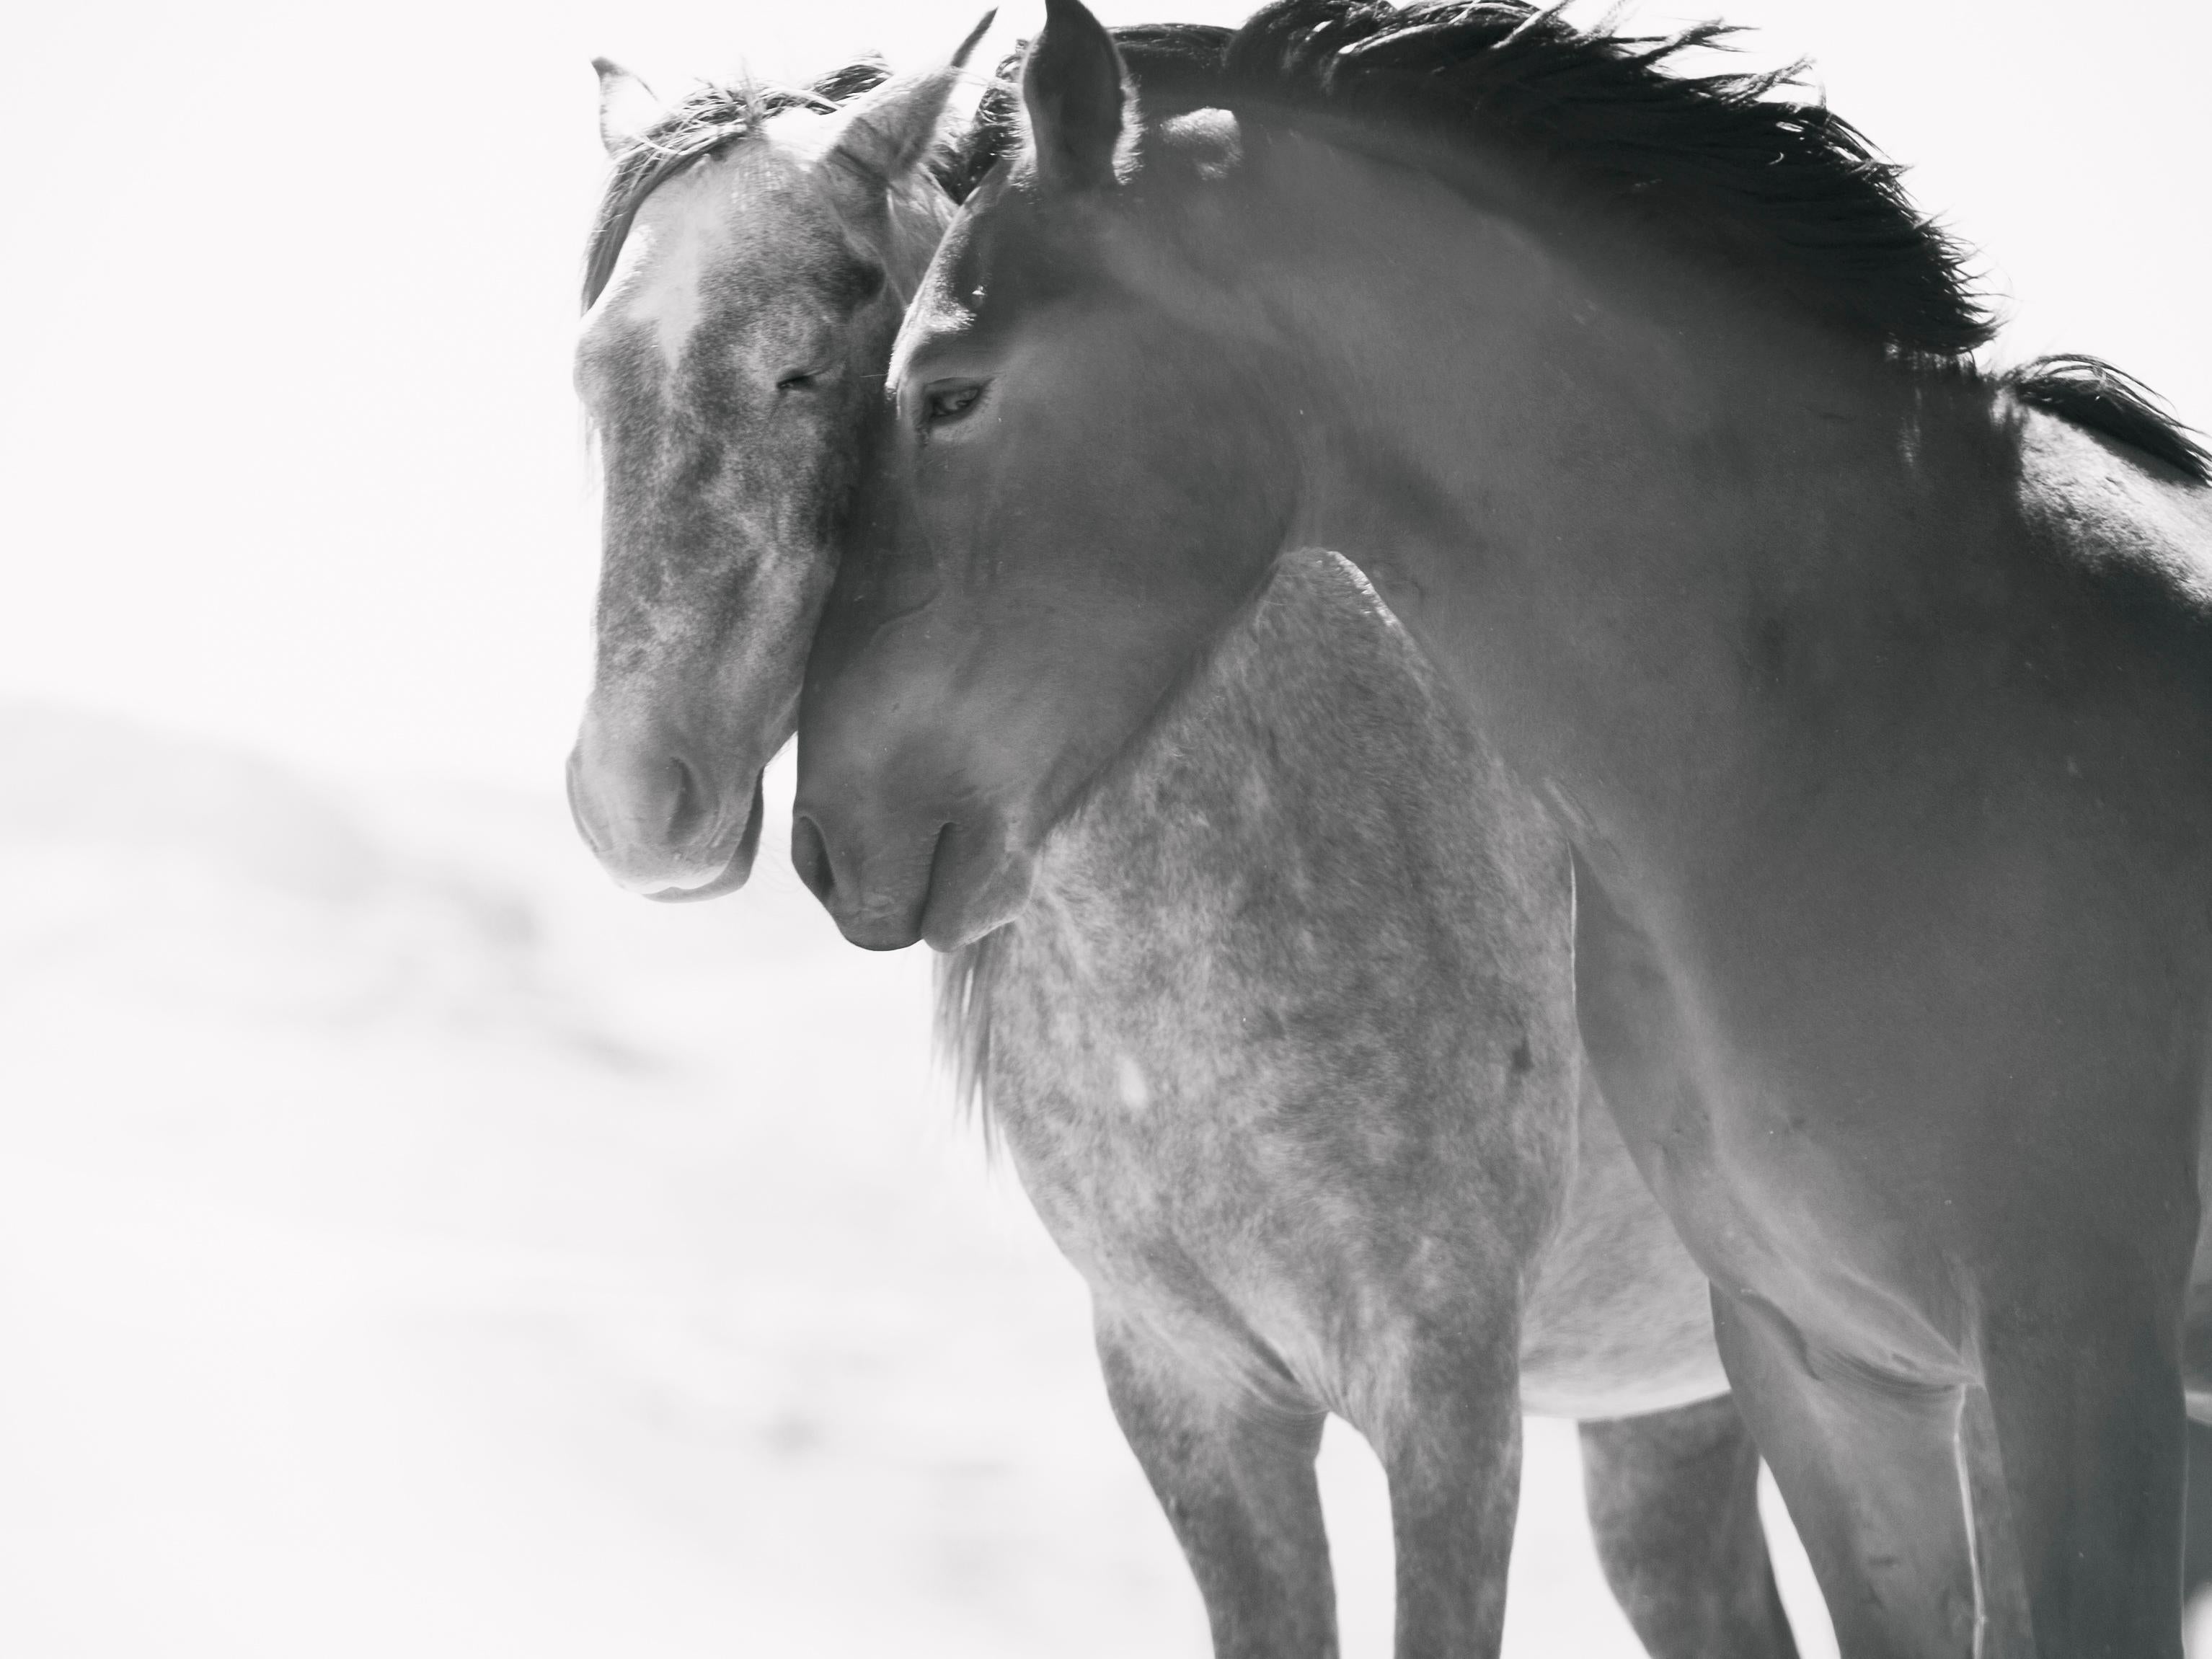 Black and White Photograph Shane Russeck - Soulmates - Photographie en noir et blanc de chevaux sauvages moutardes, 40x60